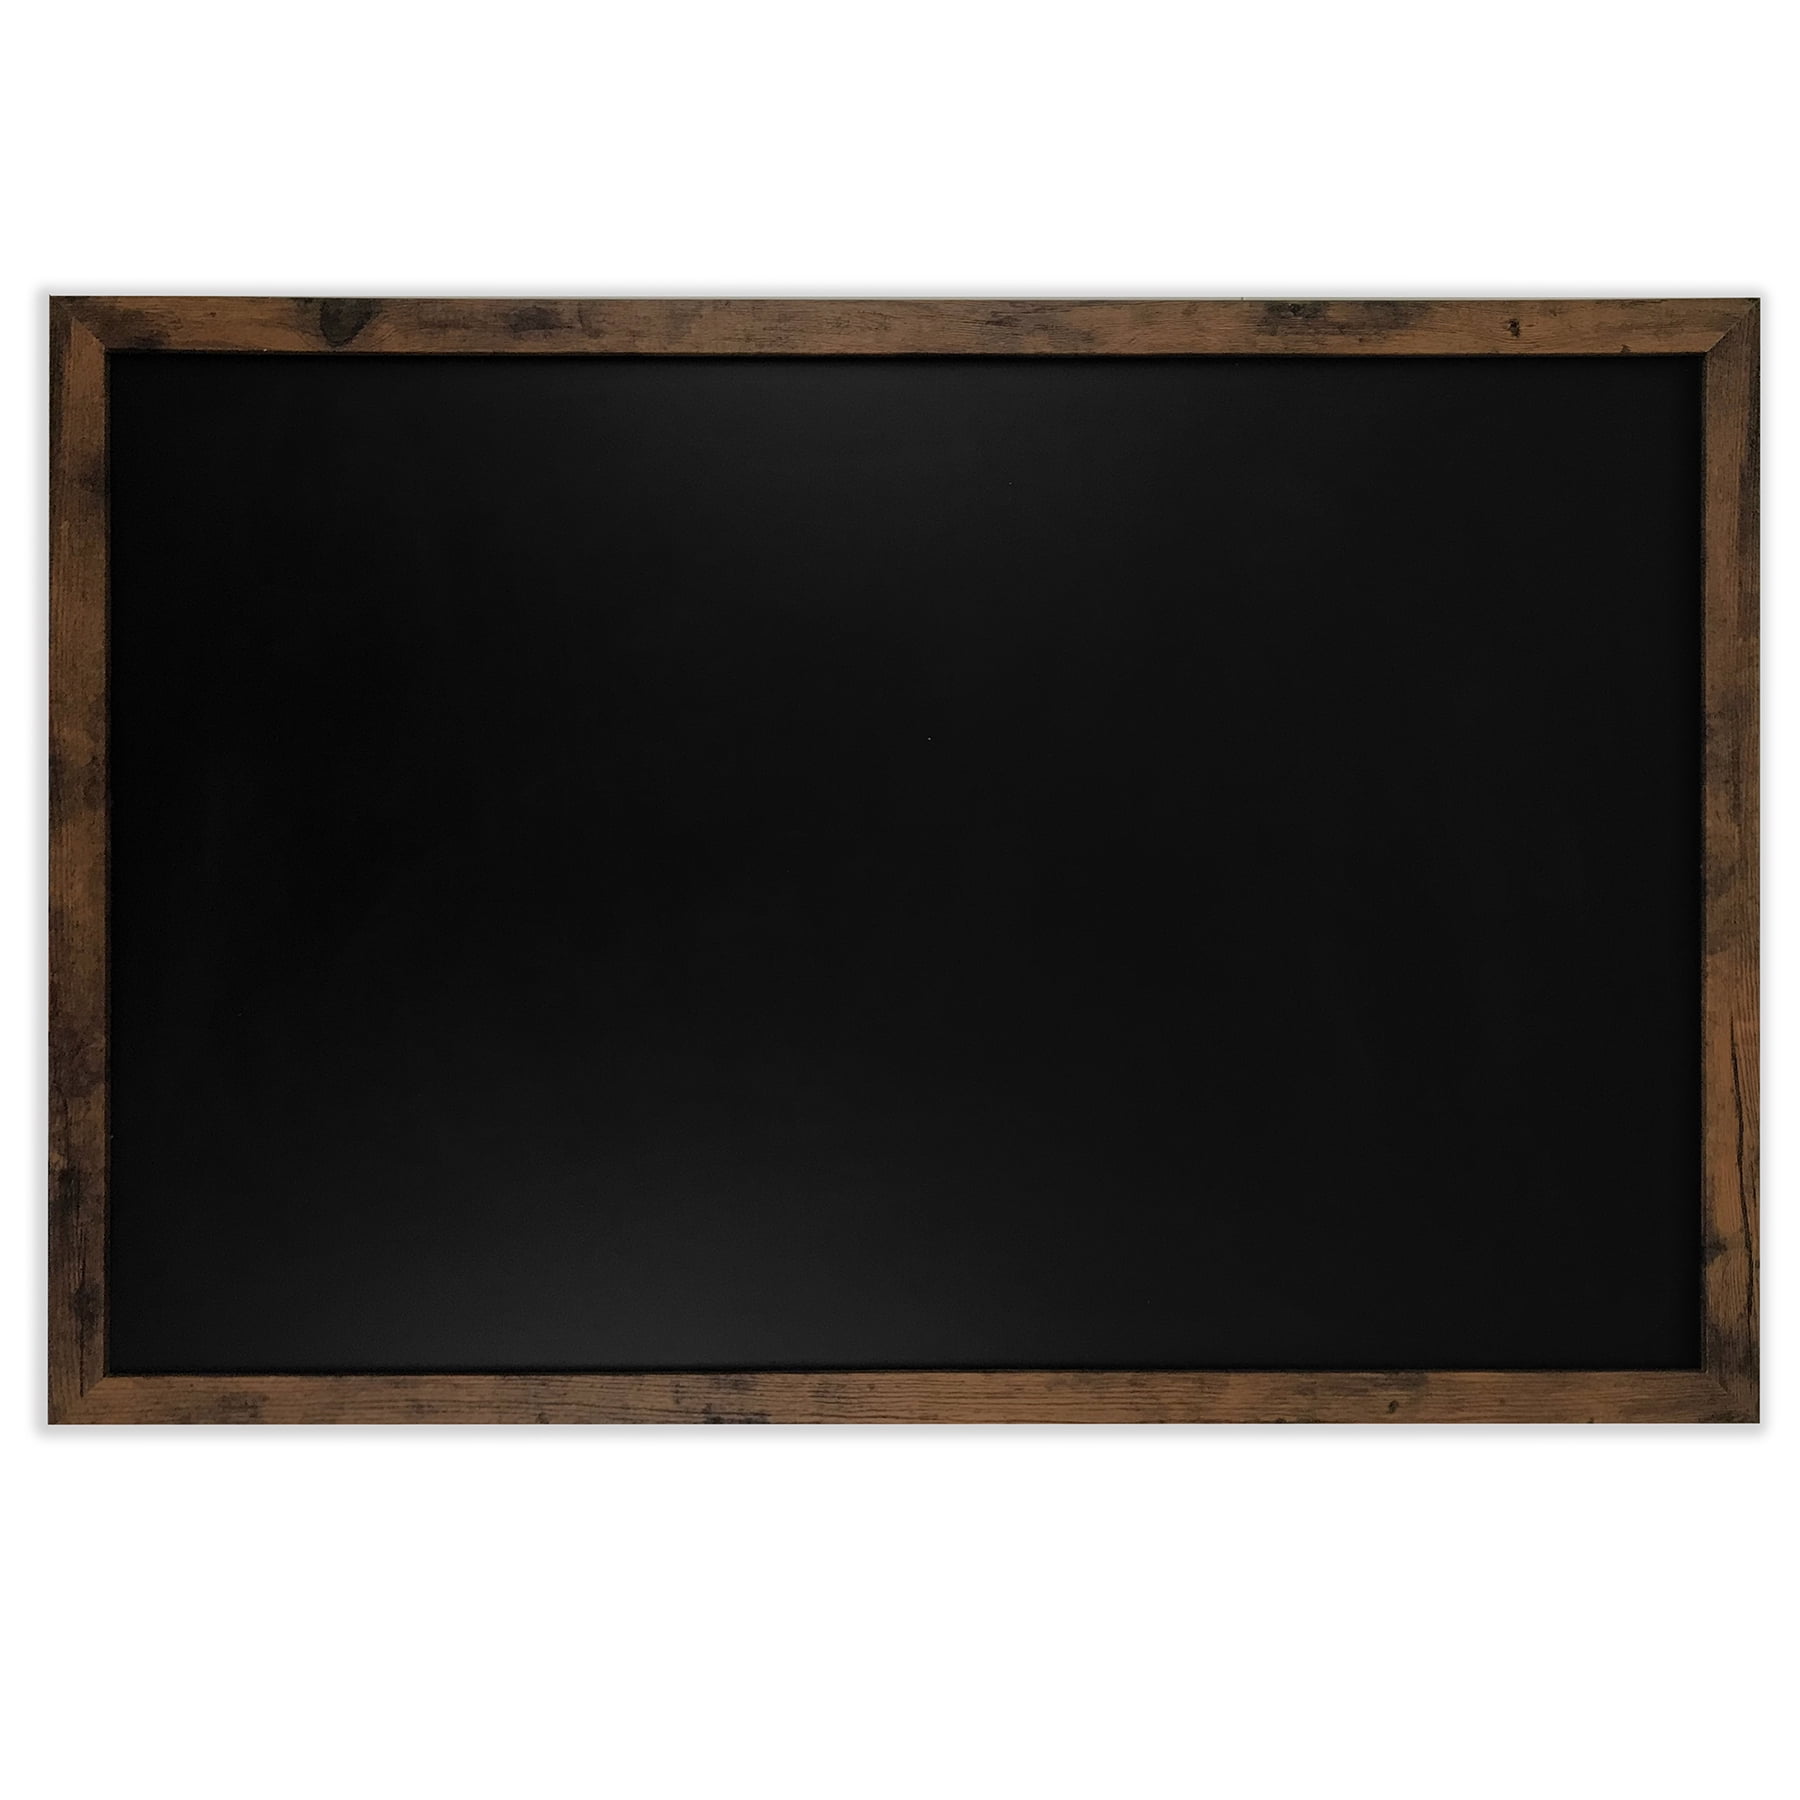 Hanging Black Chalkboards Loddie Doddie Magnetic Chalkboard Easy-to-Erase Large Chalkboard with Brown Rustic Frame for Kitchen Big Framed Magnet Blackboard 20 x 30 Chalkboard for Wall Decor 